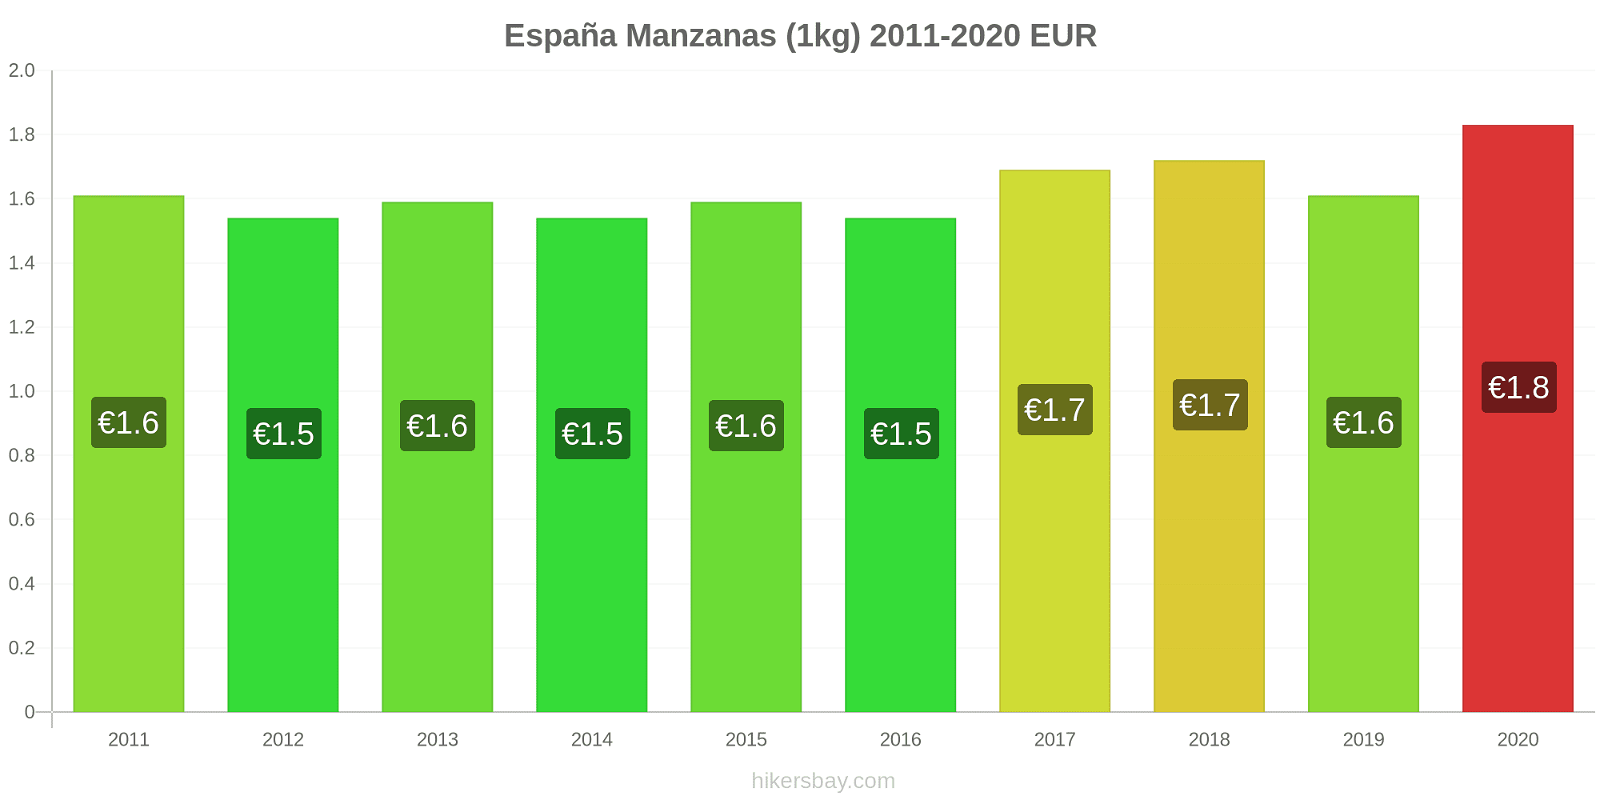 España cambios de precios Manzanas (1kg) hikersbay.com